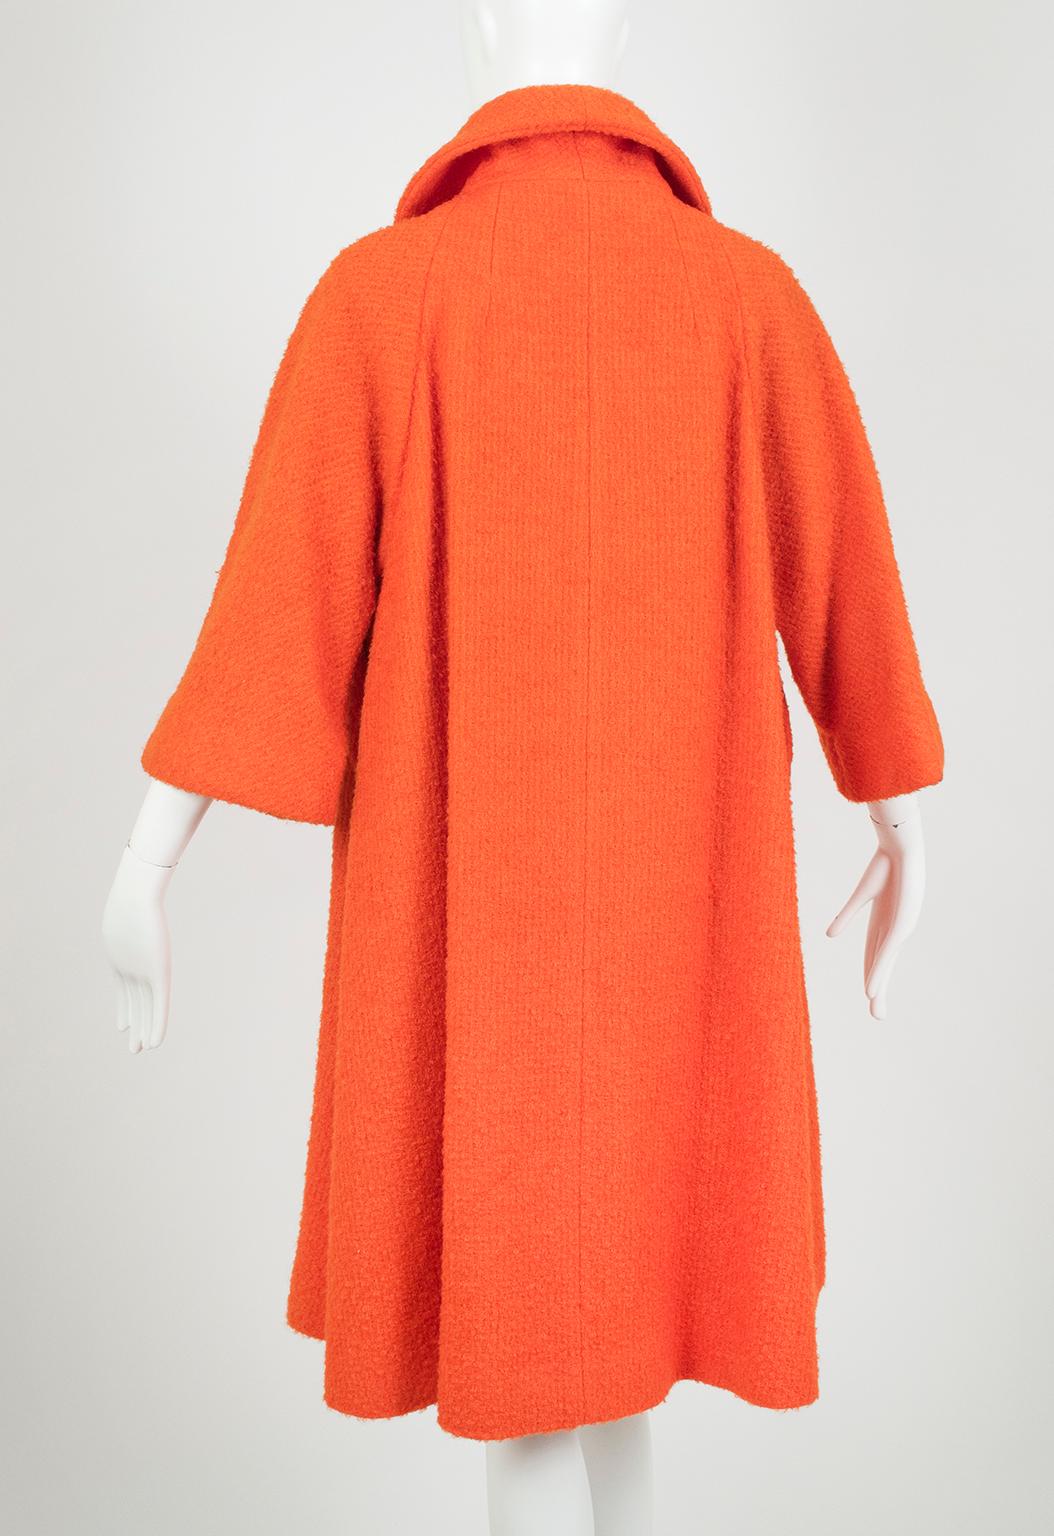 Women's Lilli Ann Orange Bouclé ¾ Sleeve Raglan Swing Coat – L, 1960s For Sale